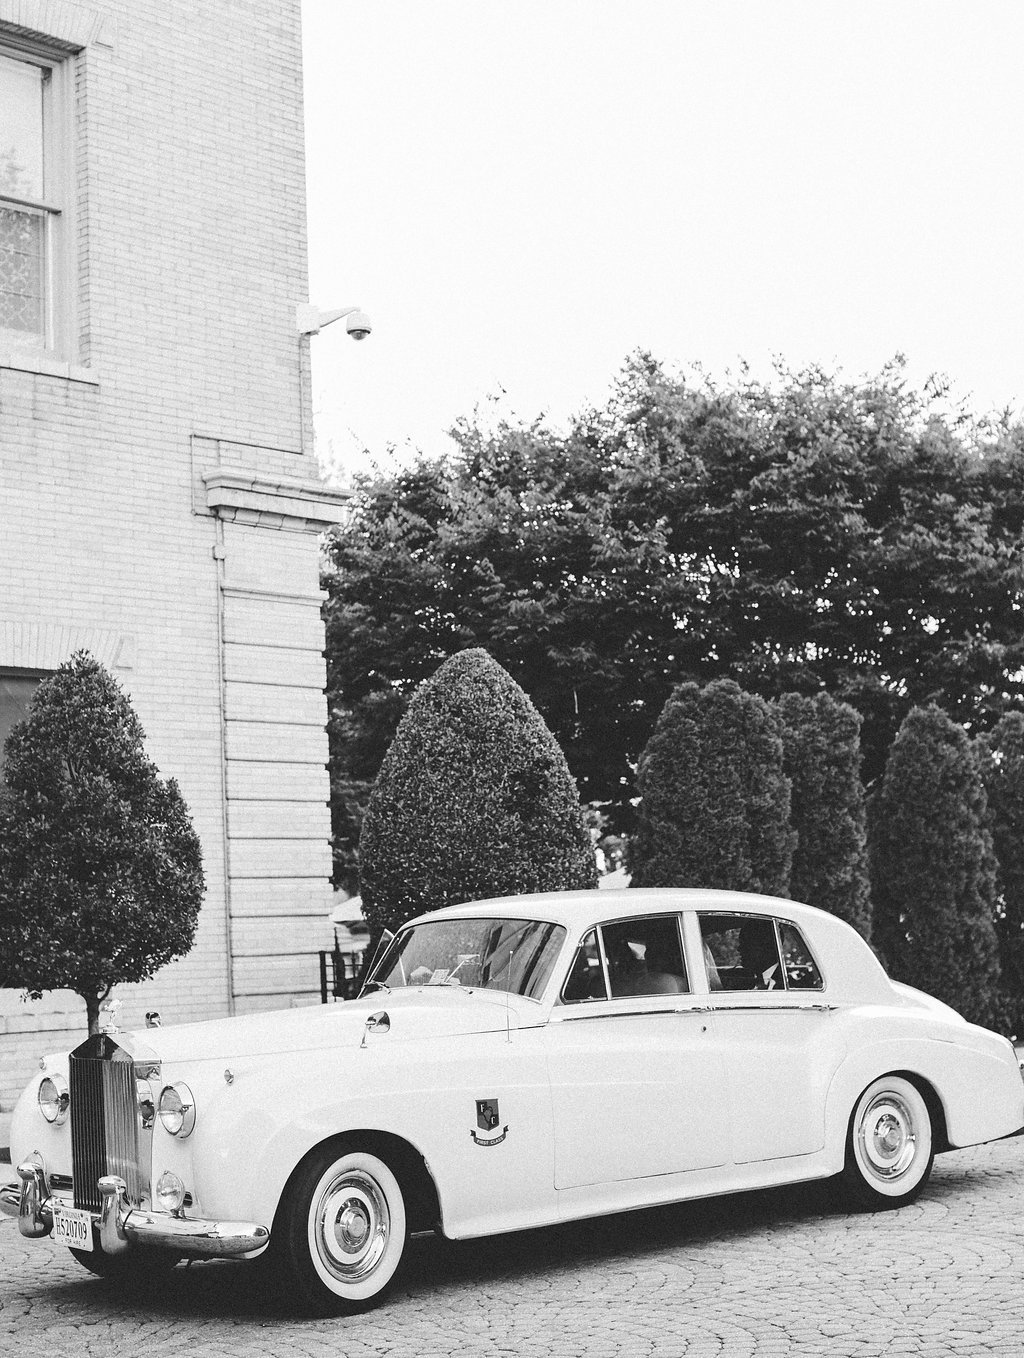 Rolls Royce wedding car